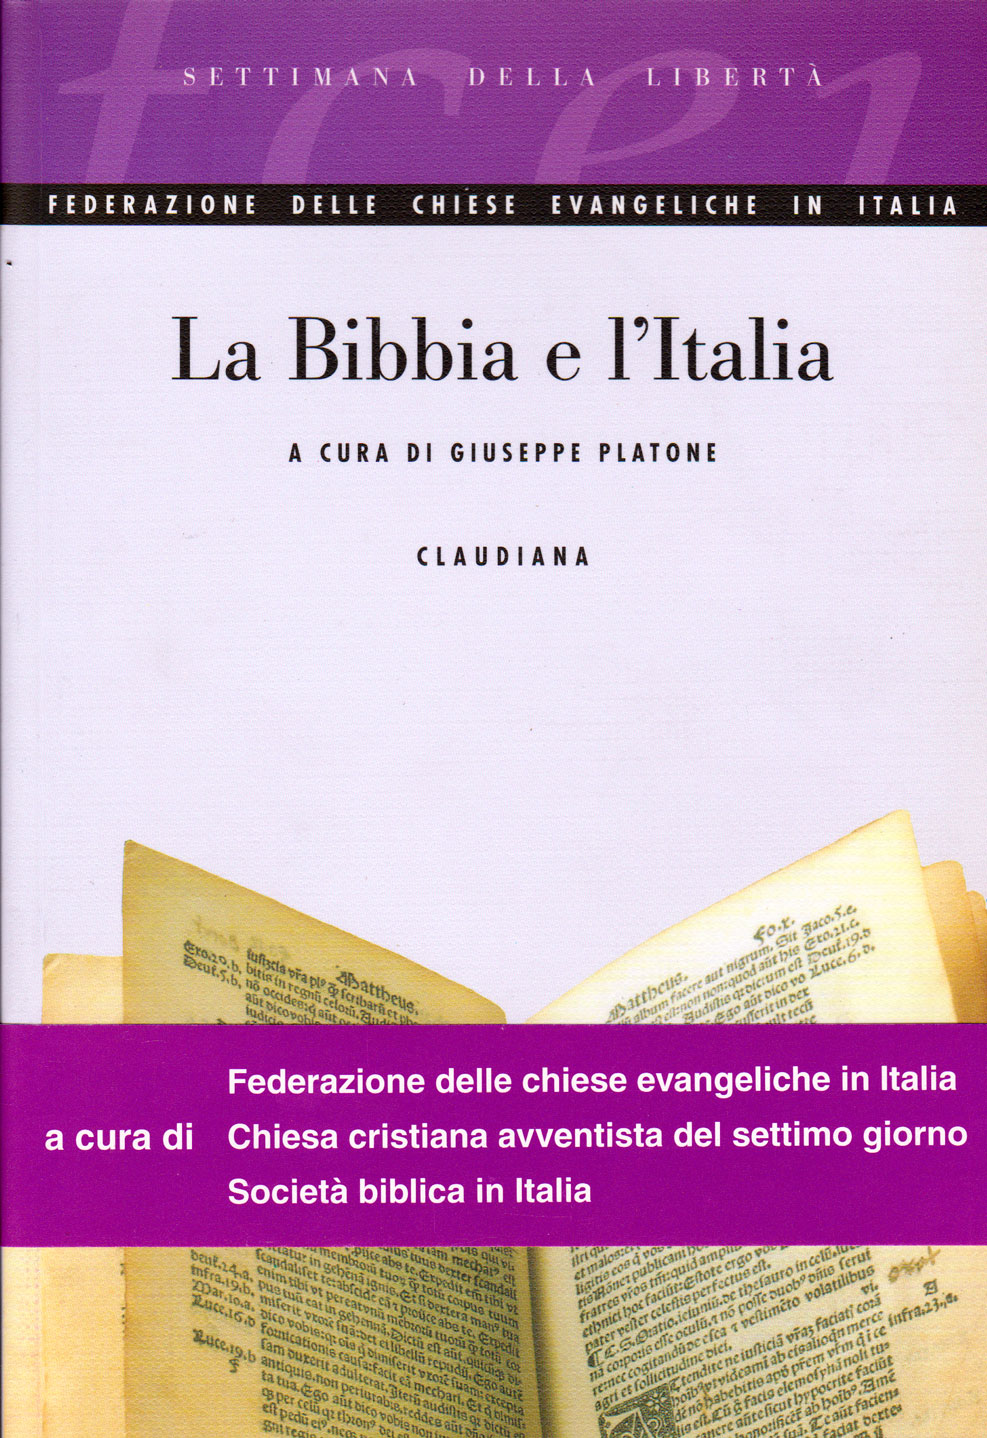 La Bibbia e l'Italia